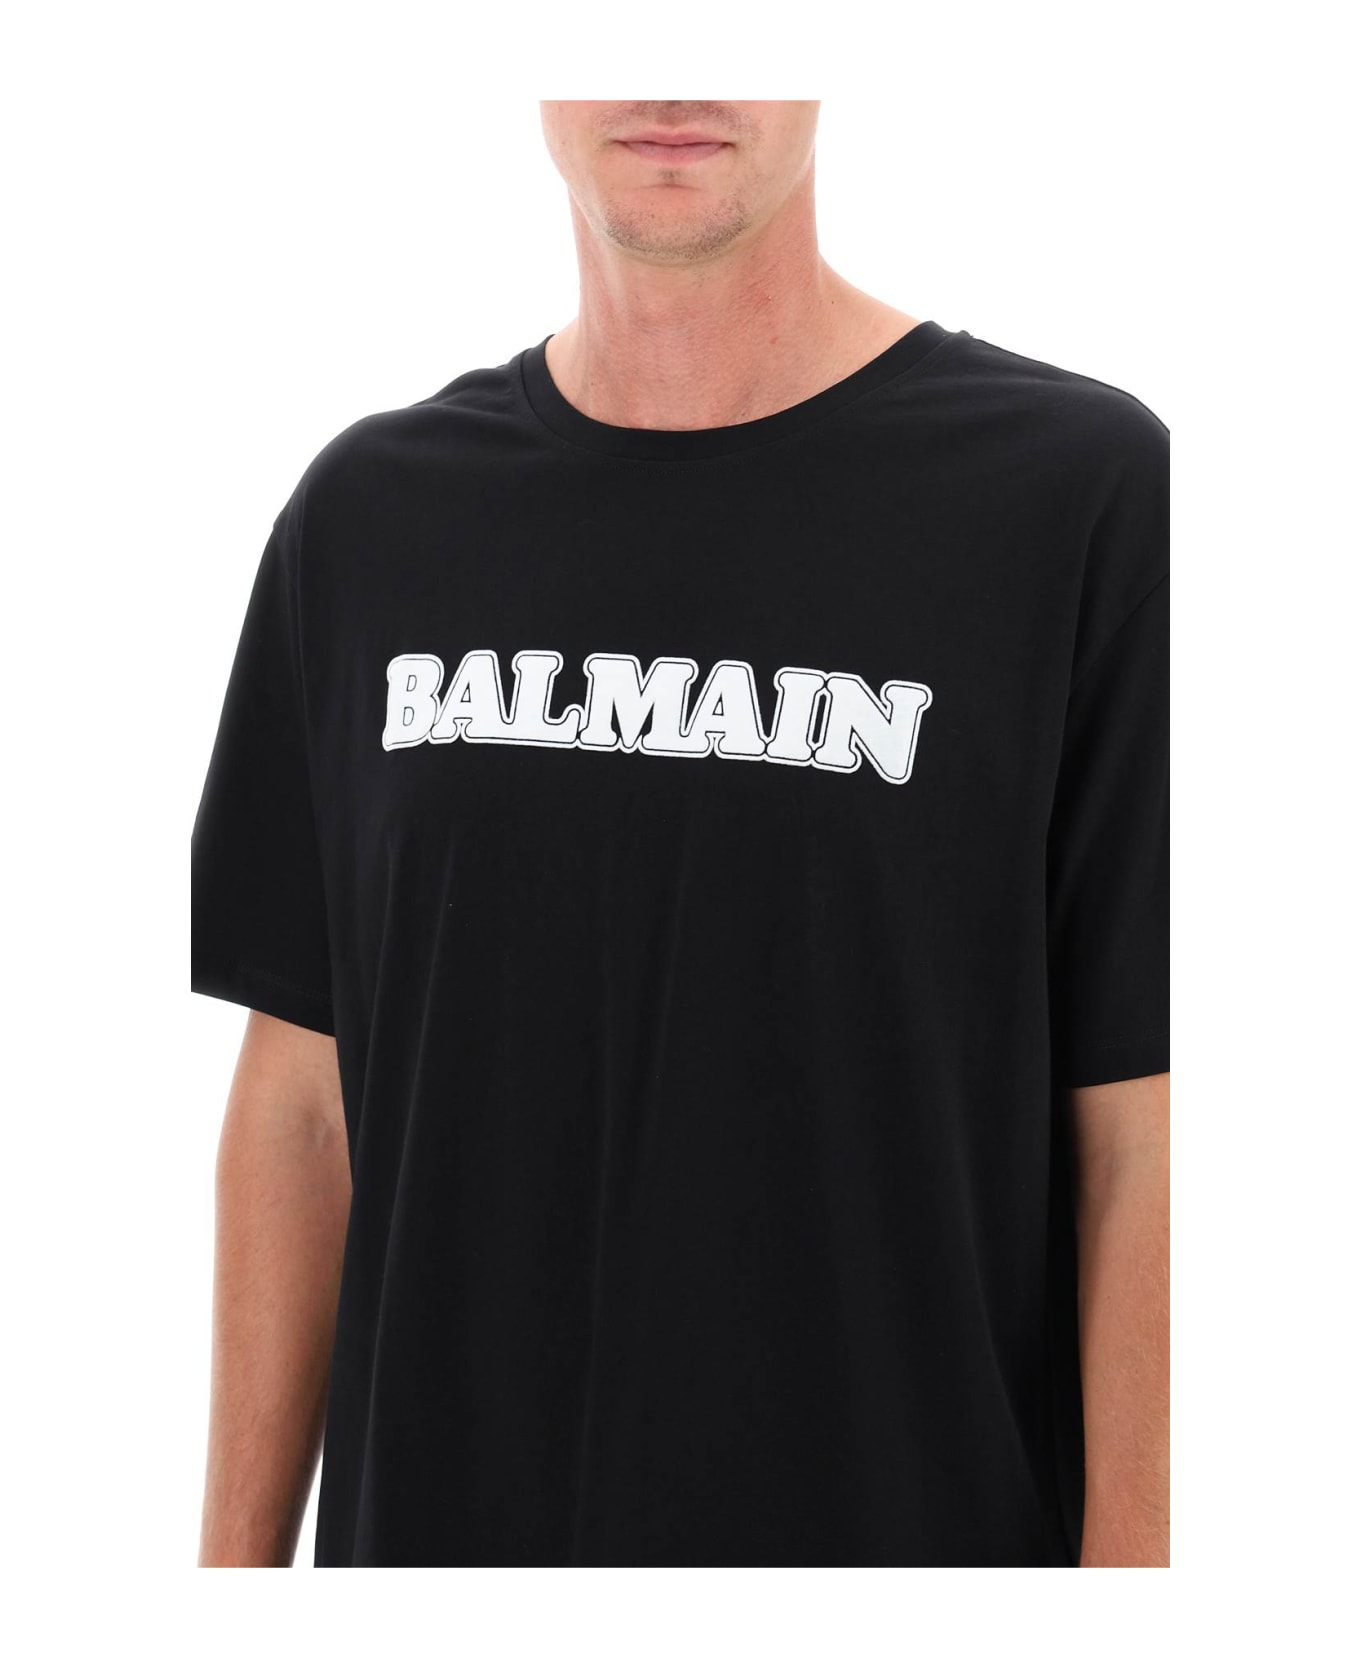 Balmain R O T-shirt - Noir/blanc